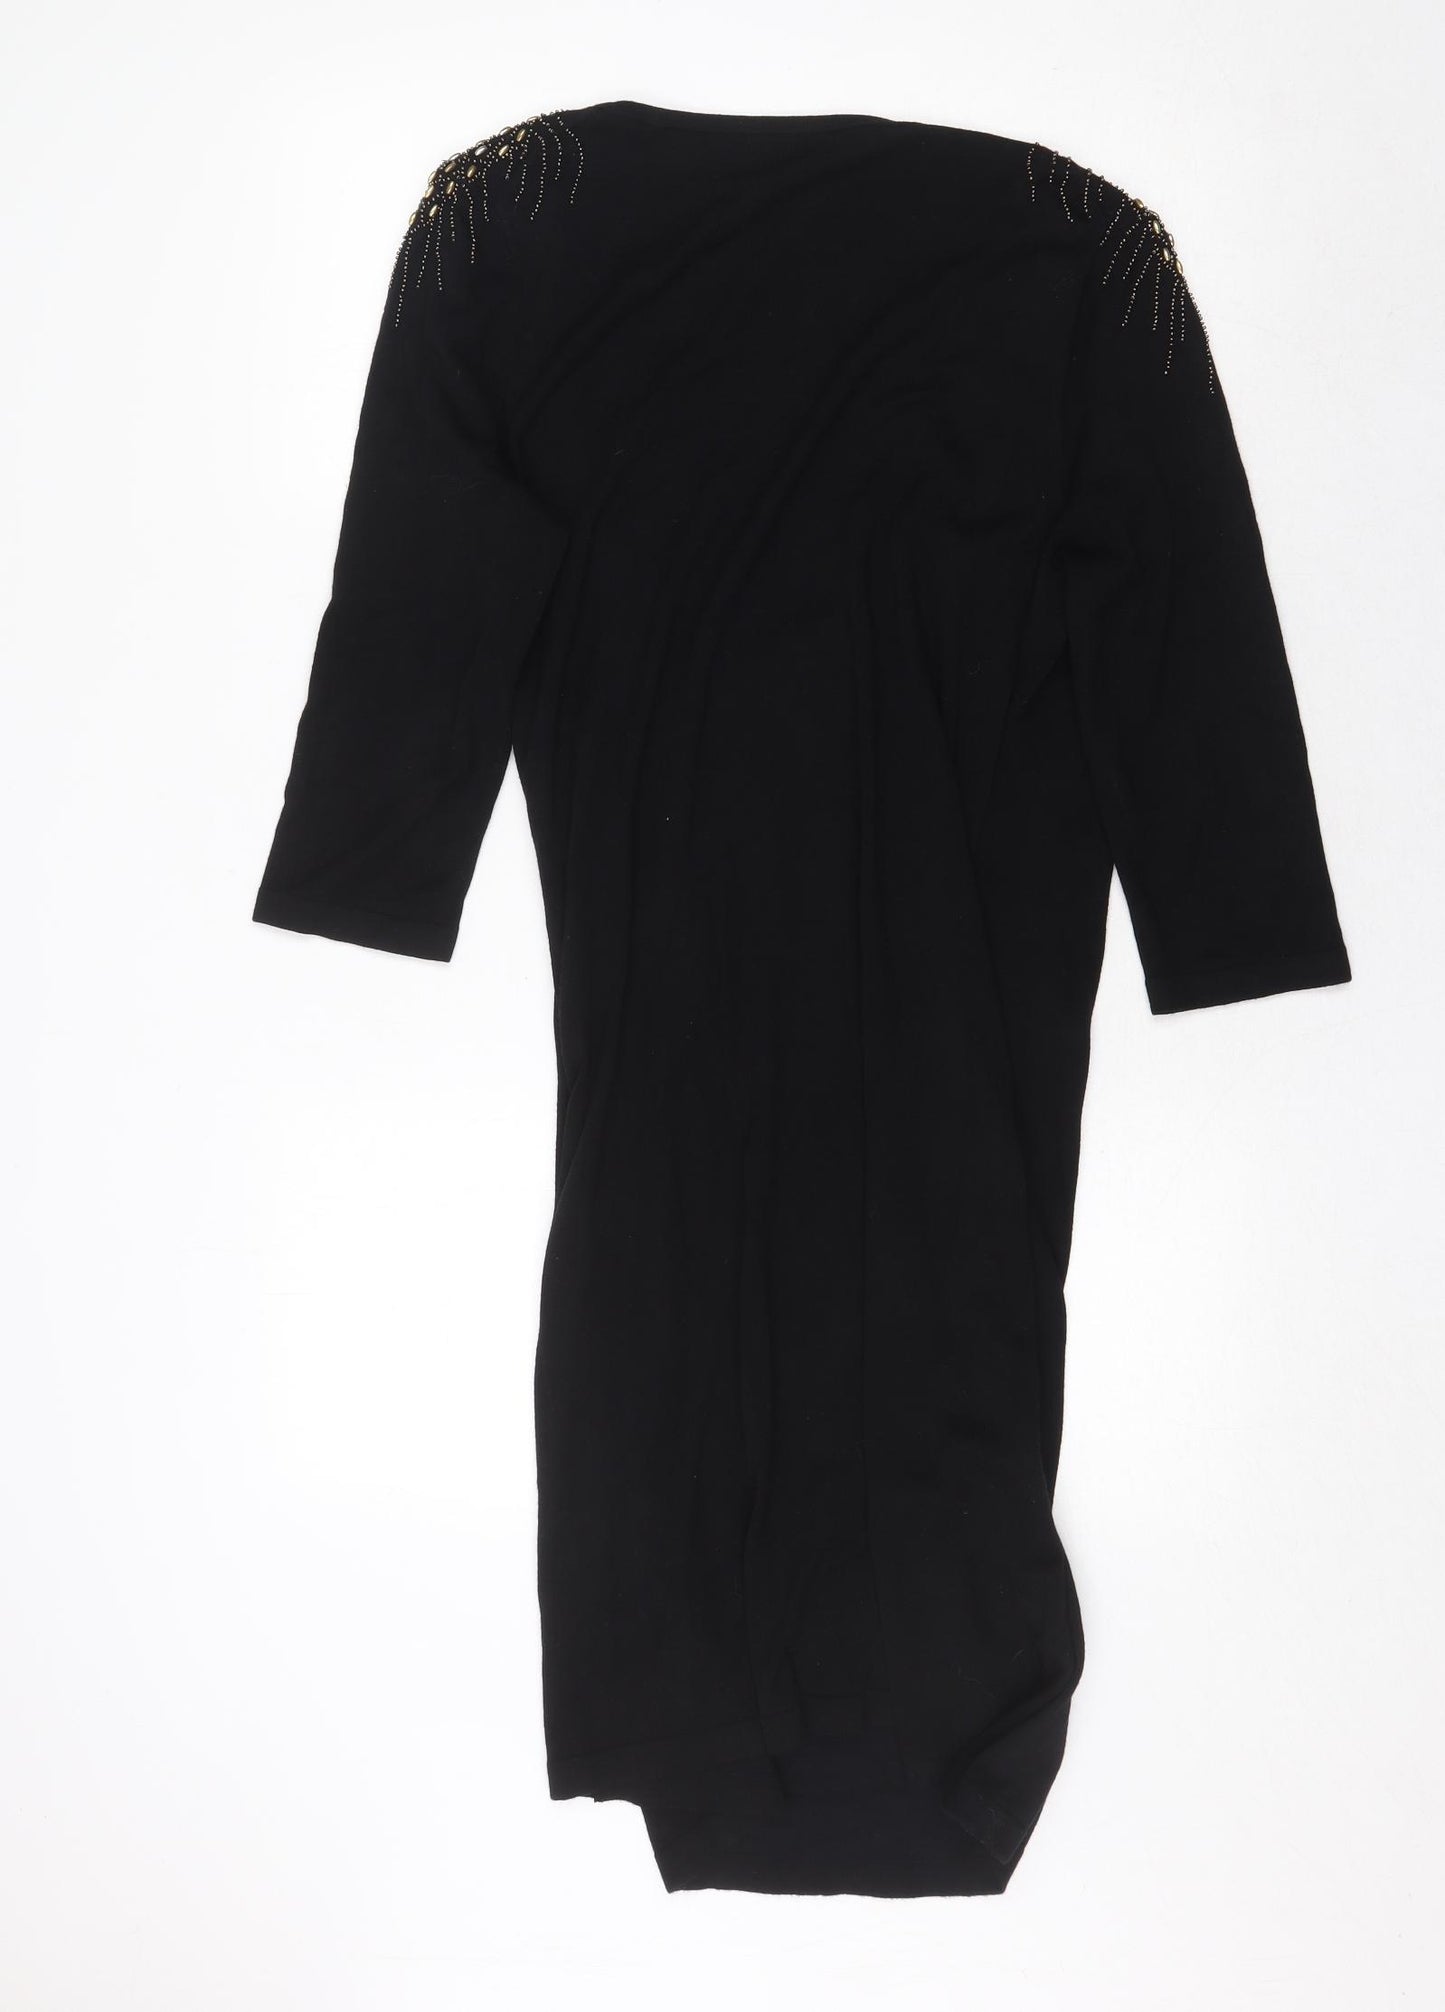 Kaliko Womens Black V-Neck Viscose Pullover Jumper Size 14